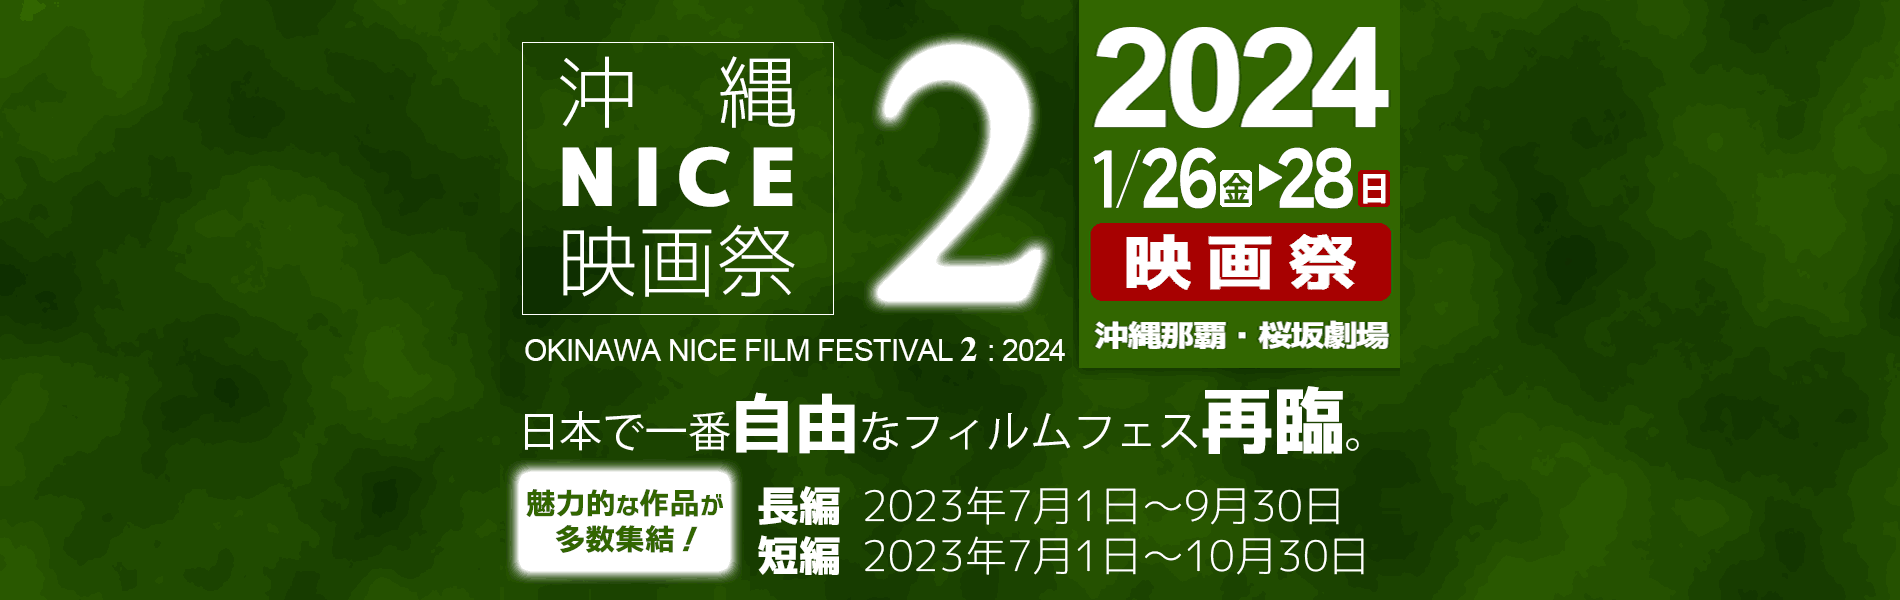 沖縄NICE映画祭2　応募開始